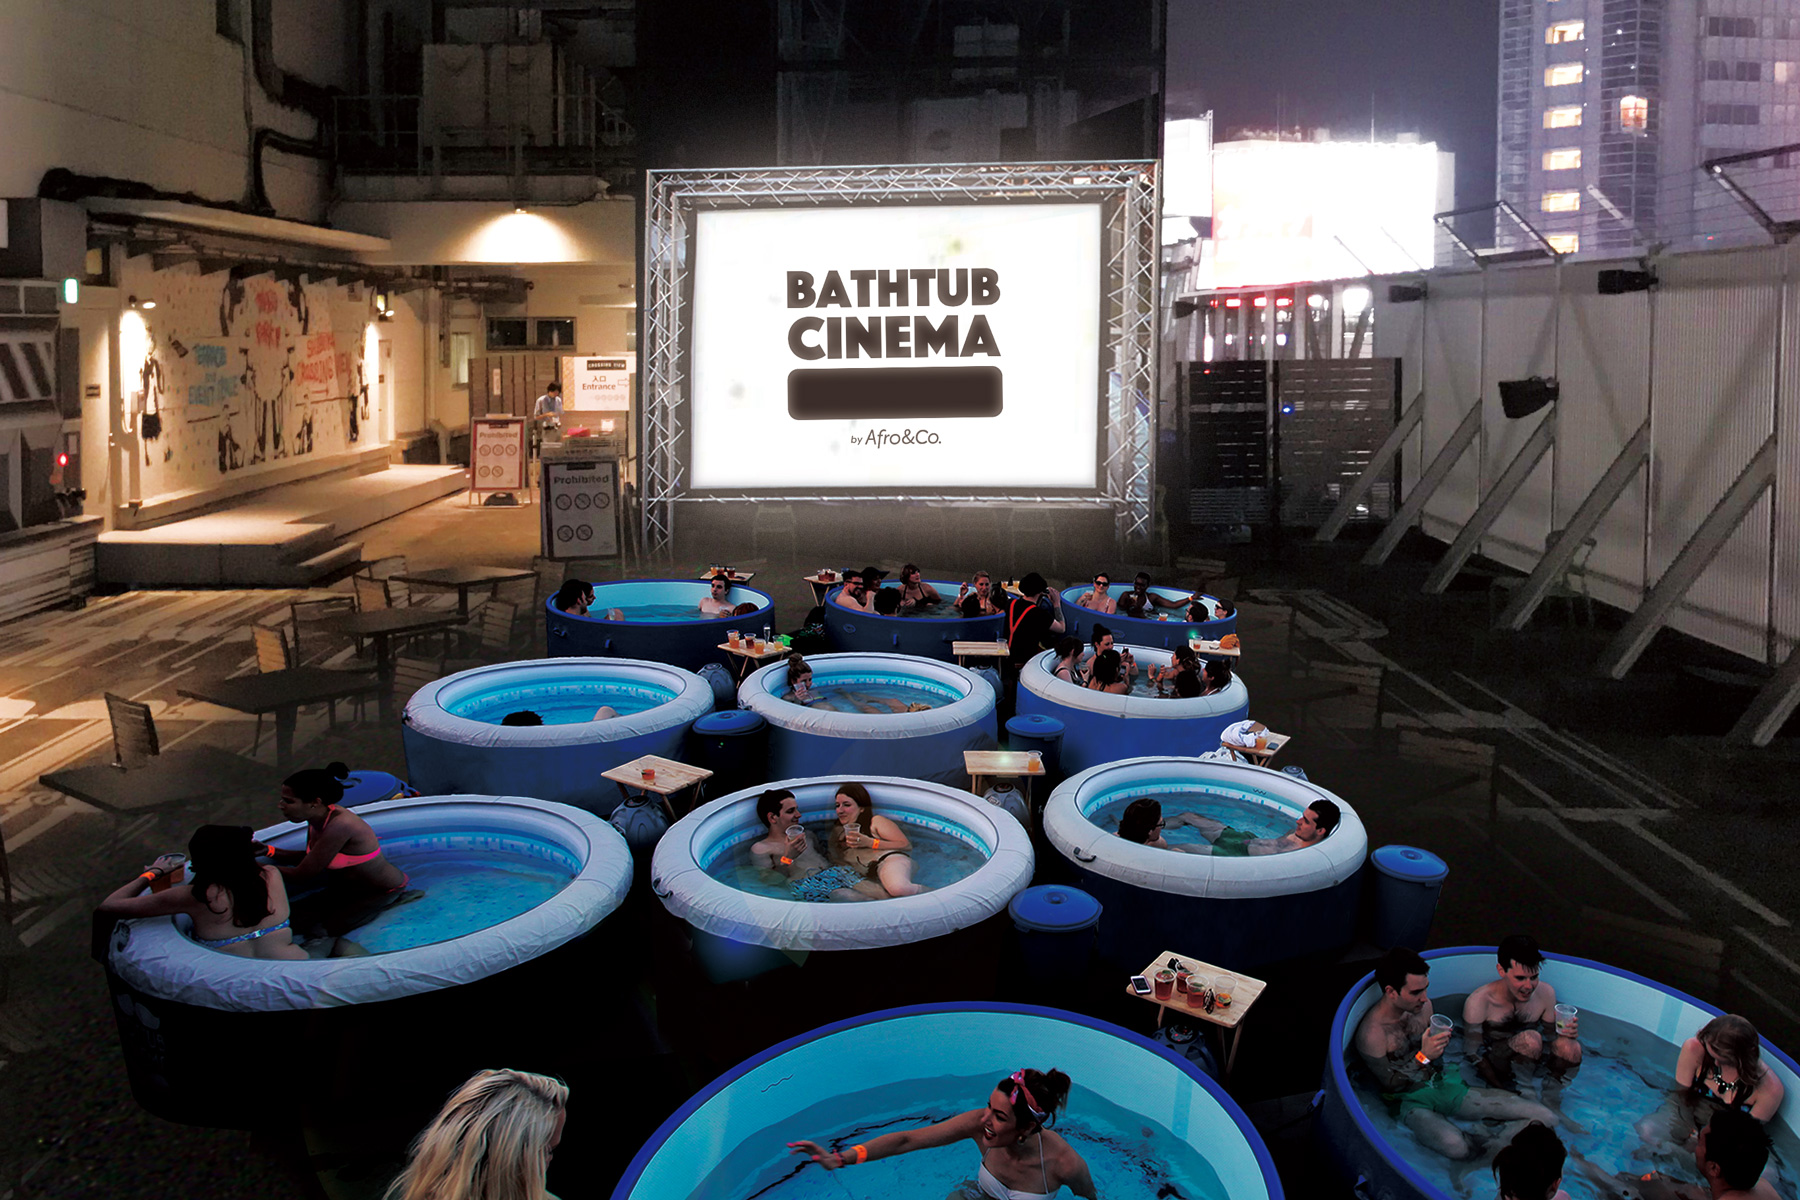 Menikmati Sensasi Bathub Cinema Di Jepang